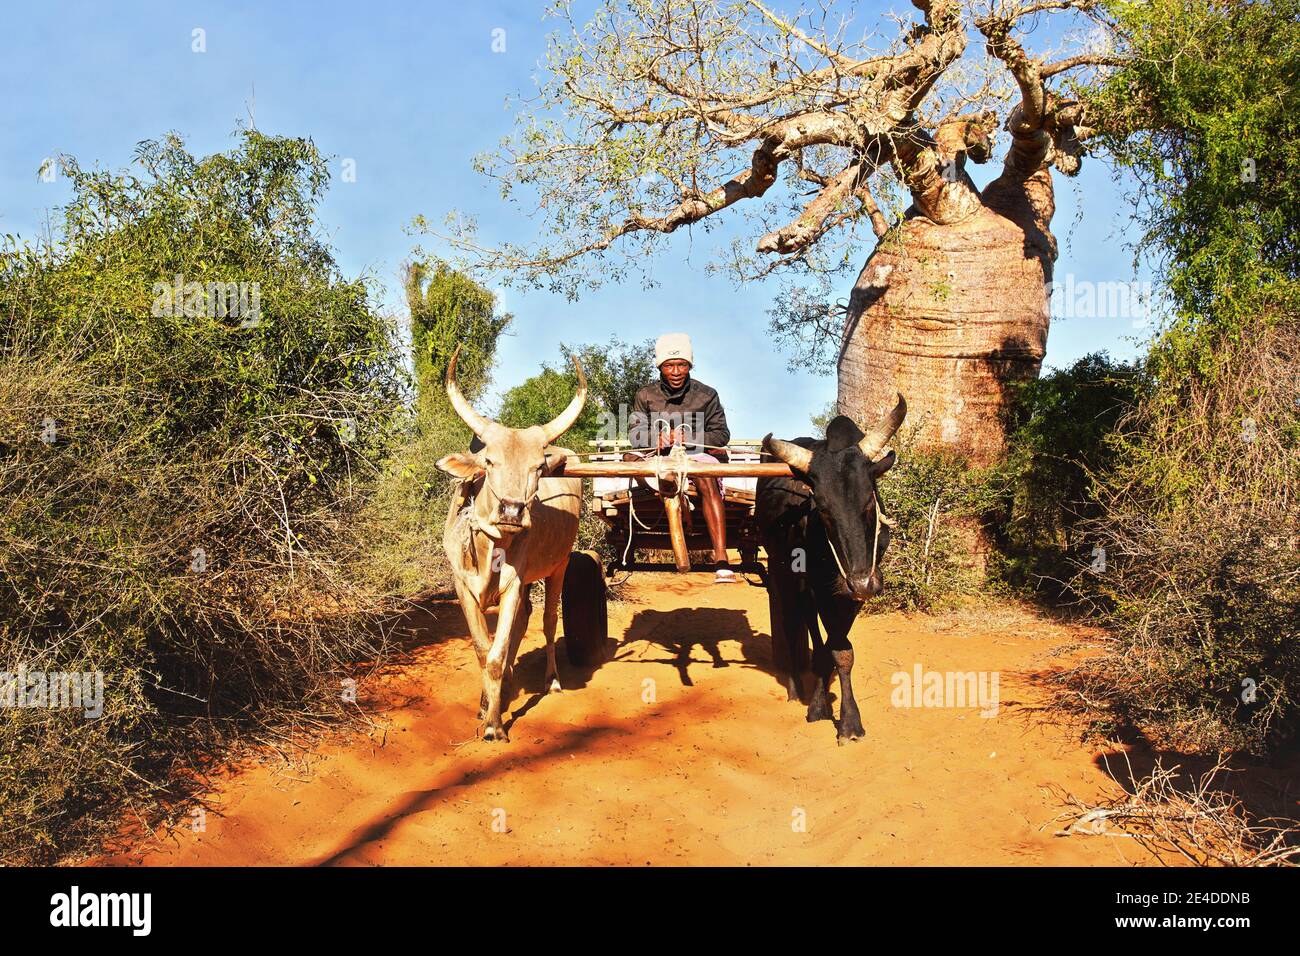 Ifaty, Madagascar - 01 mai 2019: Inconnu homme malgache local conduisant une simple charrette en bois tirée par deux bovins de zébu sur route poussiéreuse, baobab et sma Banque D'Images